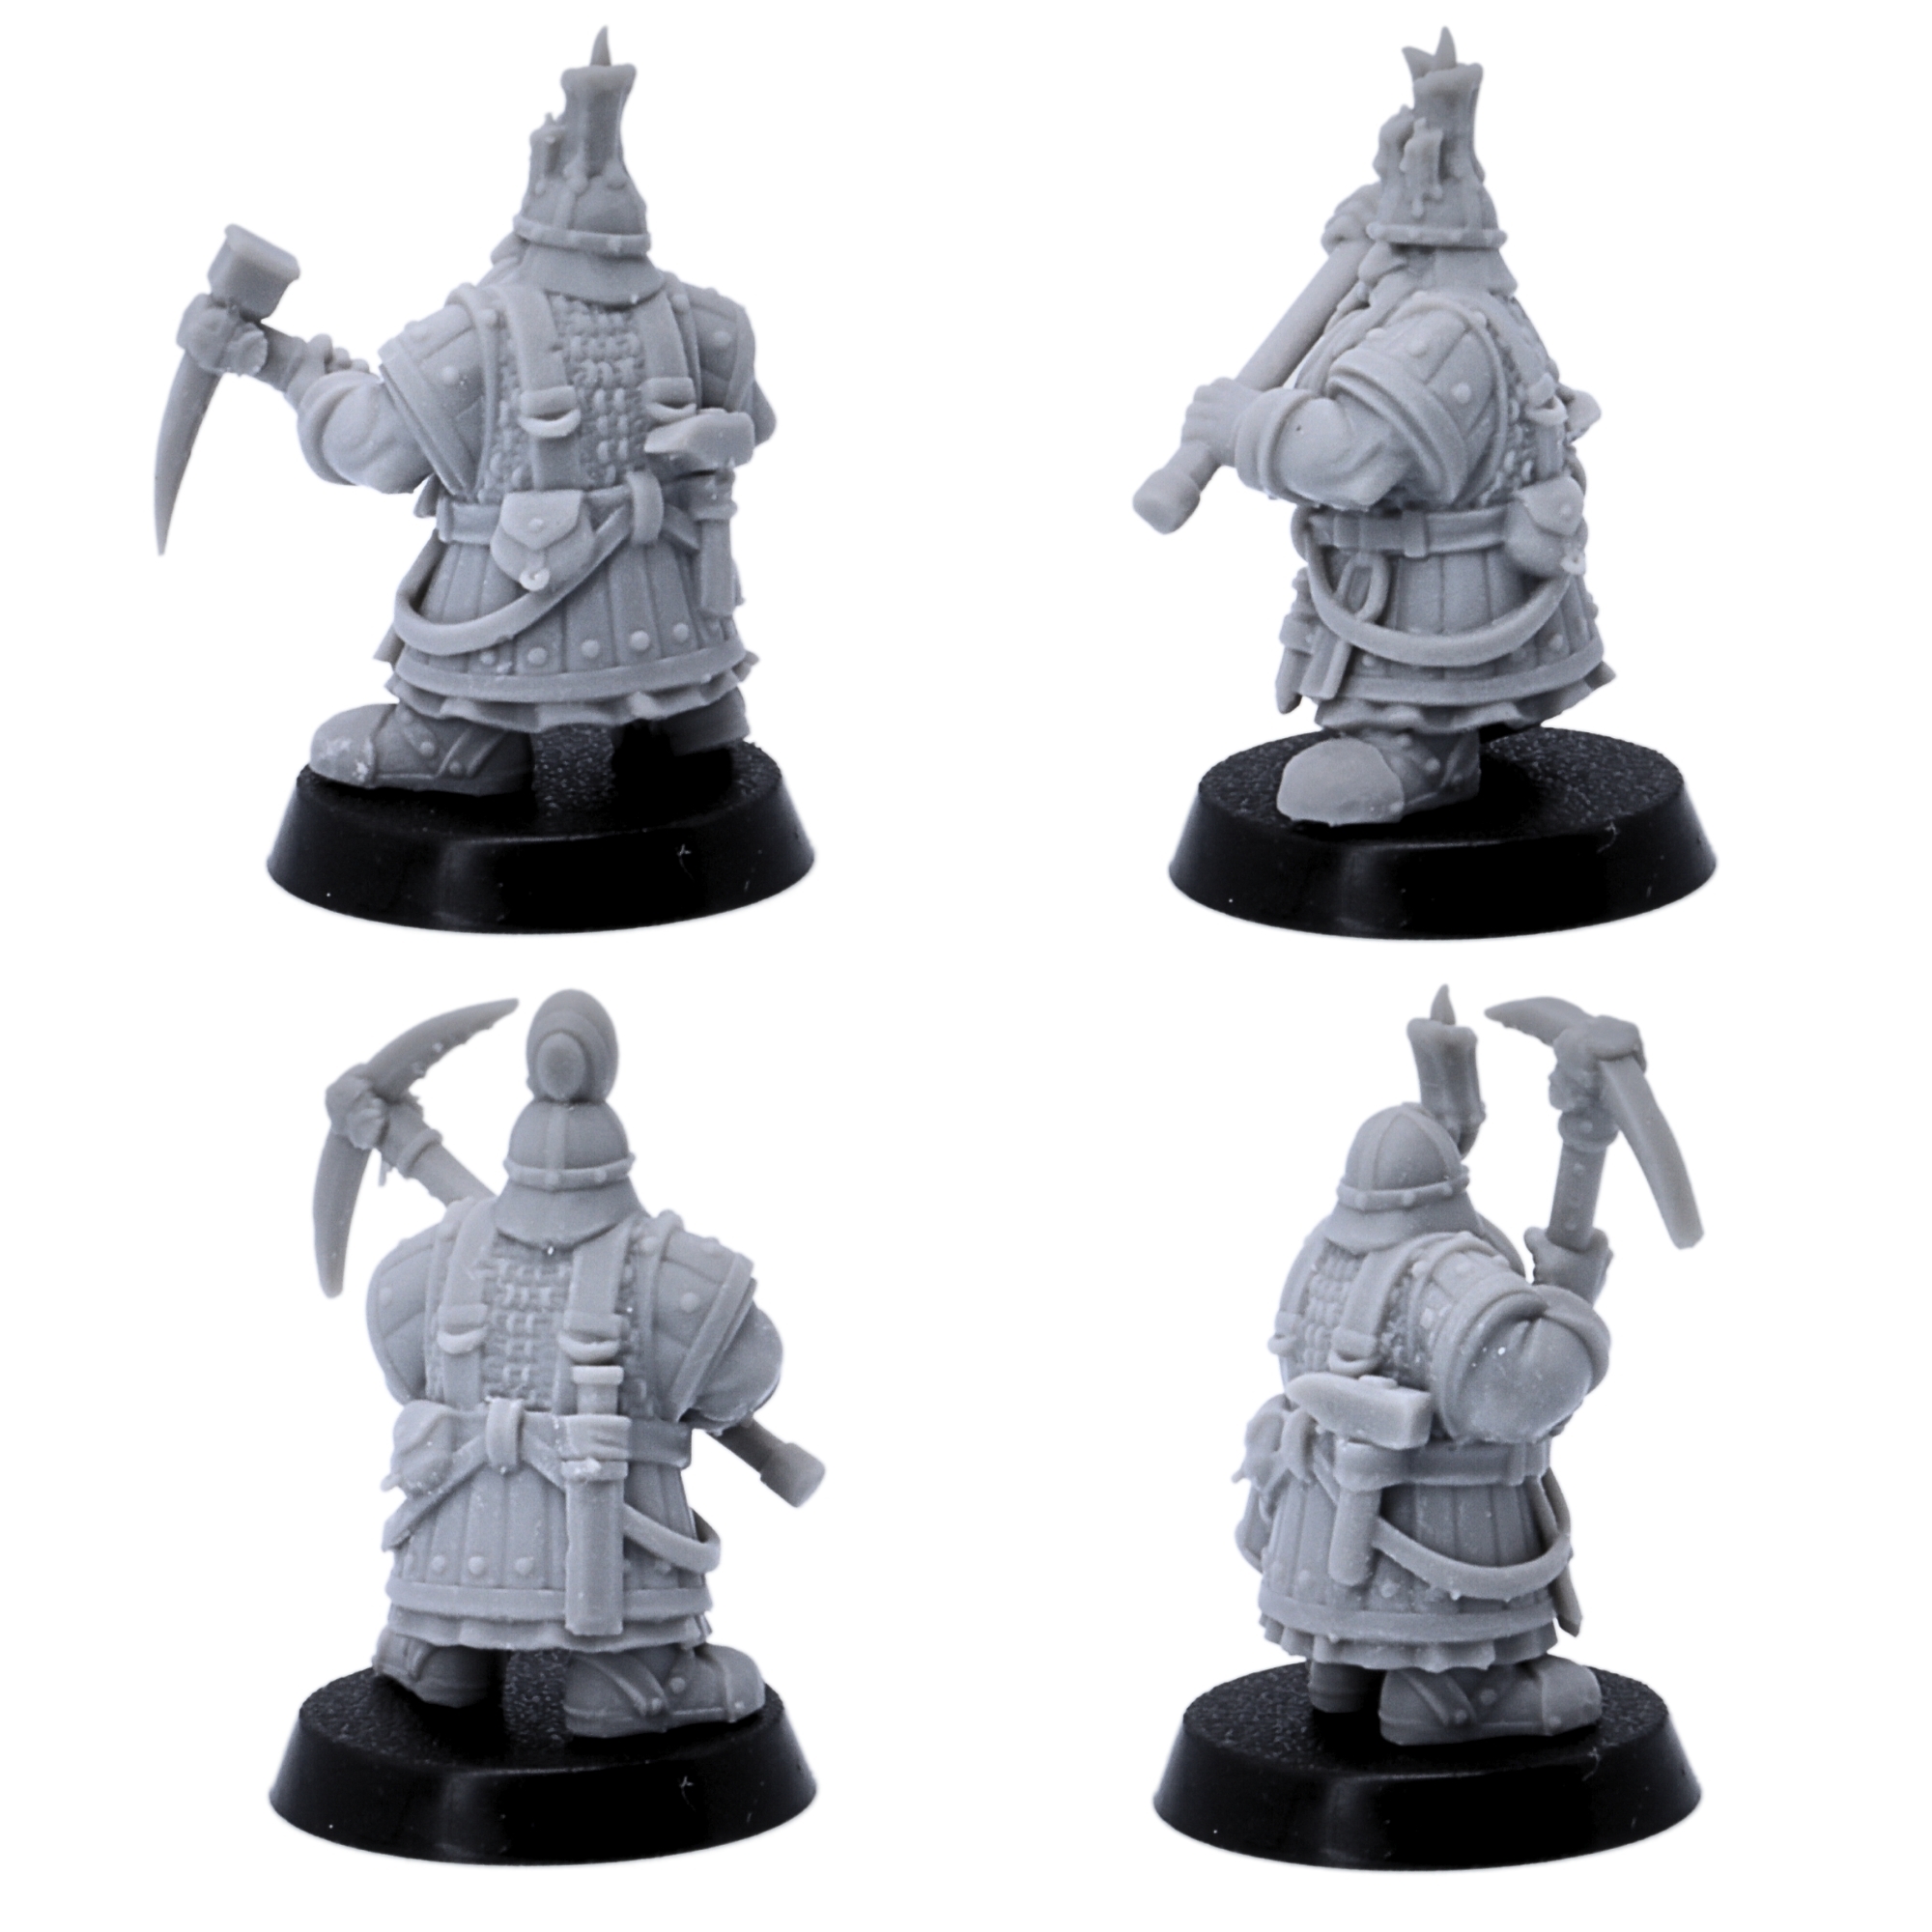 Wargaming Figures designed by Highlands Miniatures